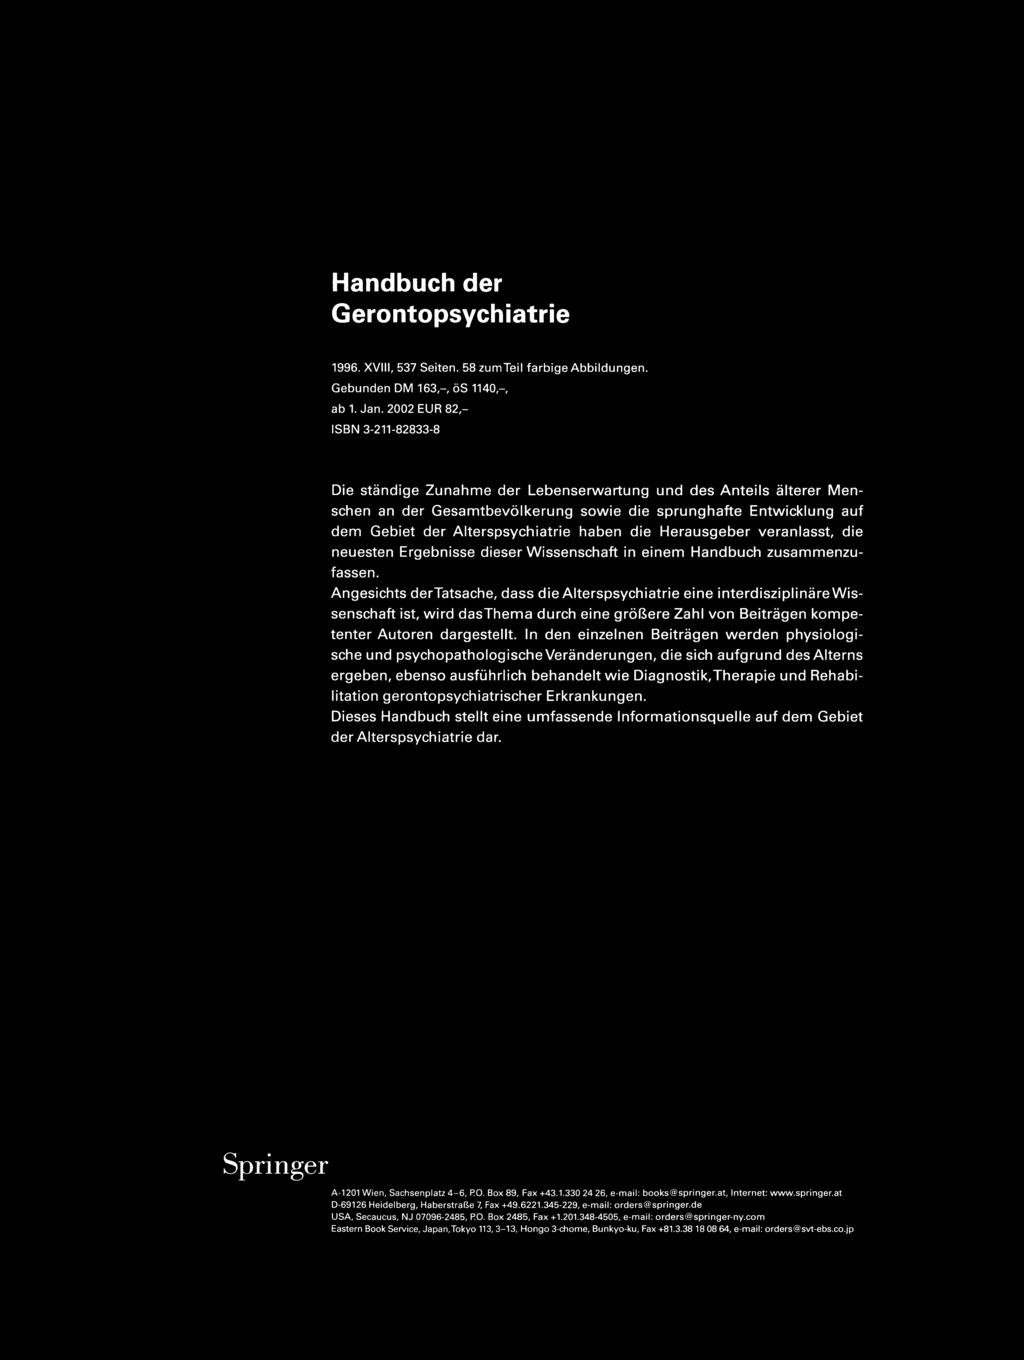 Spri n gerpsych iatrie Hans Georg Zapotoczky, Peter Kurt Fischhof (Hrsg.) Handbuch der Gerontopsychiatrie 1996. XVIII, 537 Seiten. 58 zumteil farbige Abbildungen. Gebunden DM 163,-, CiS 1140,-, ab 1.